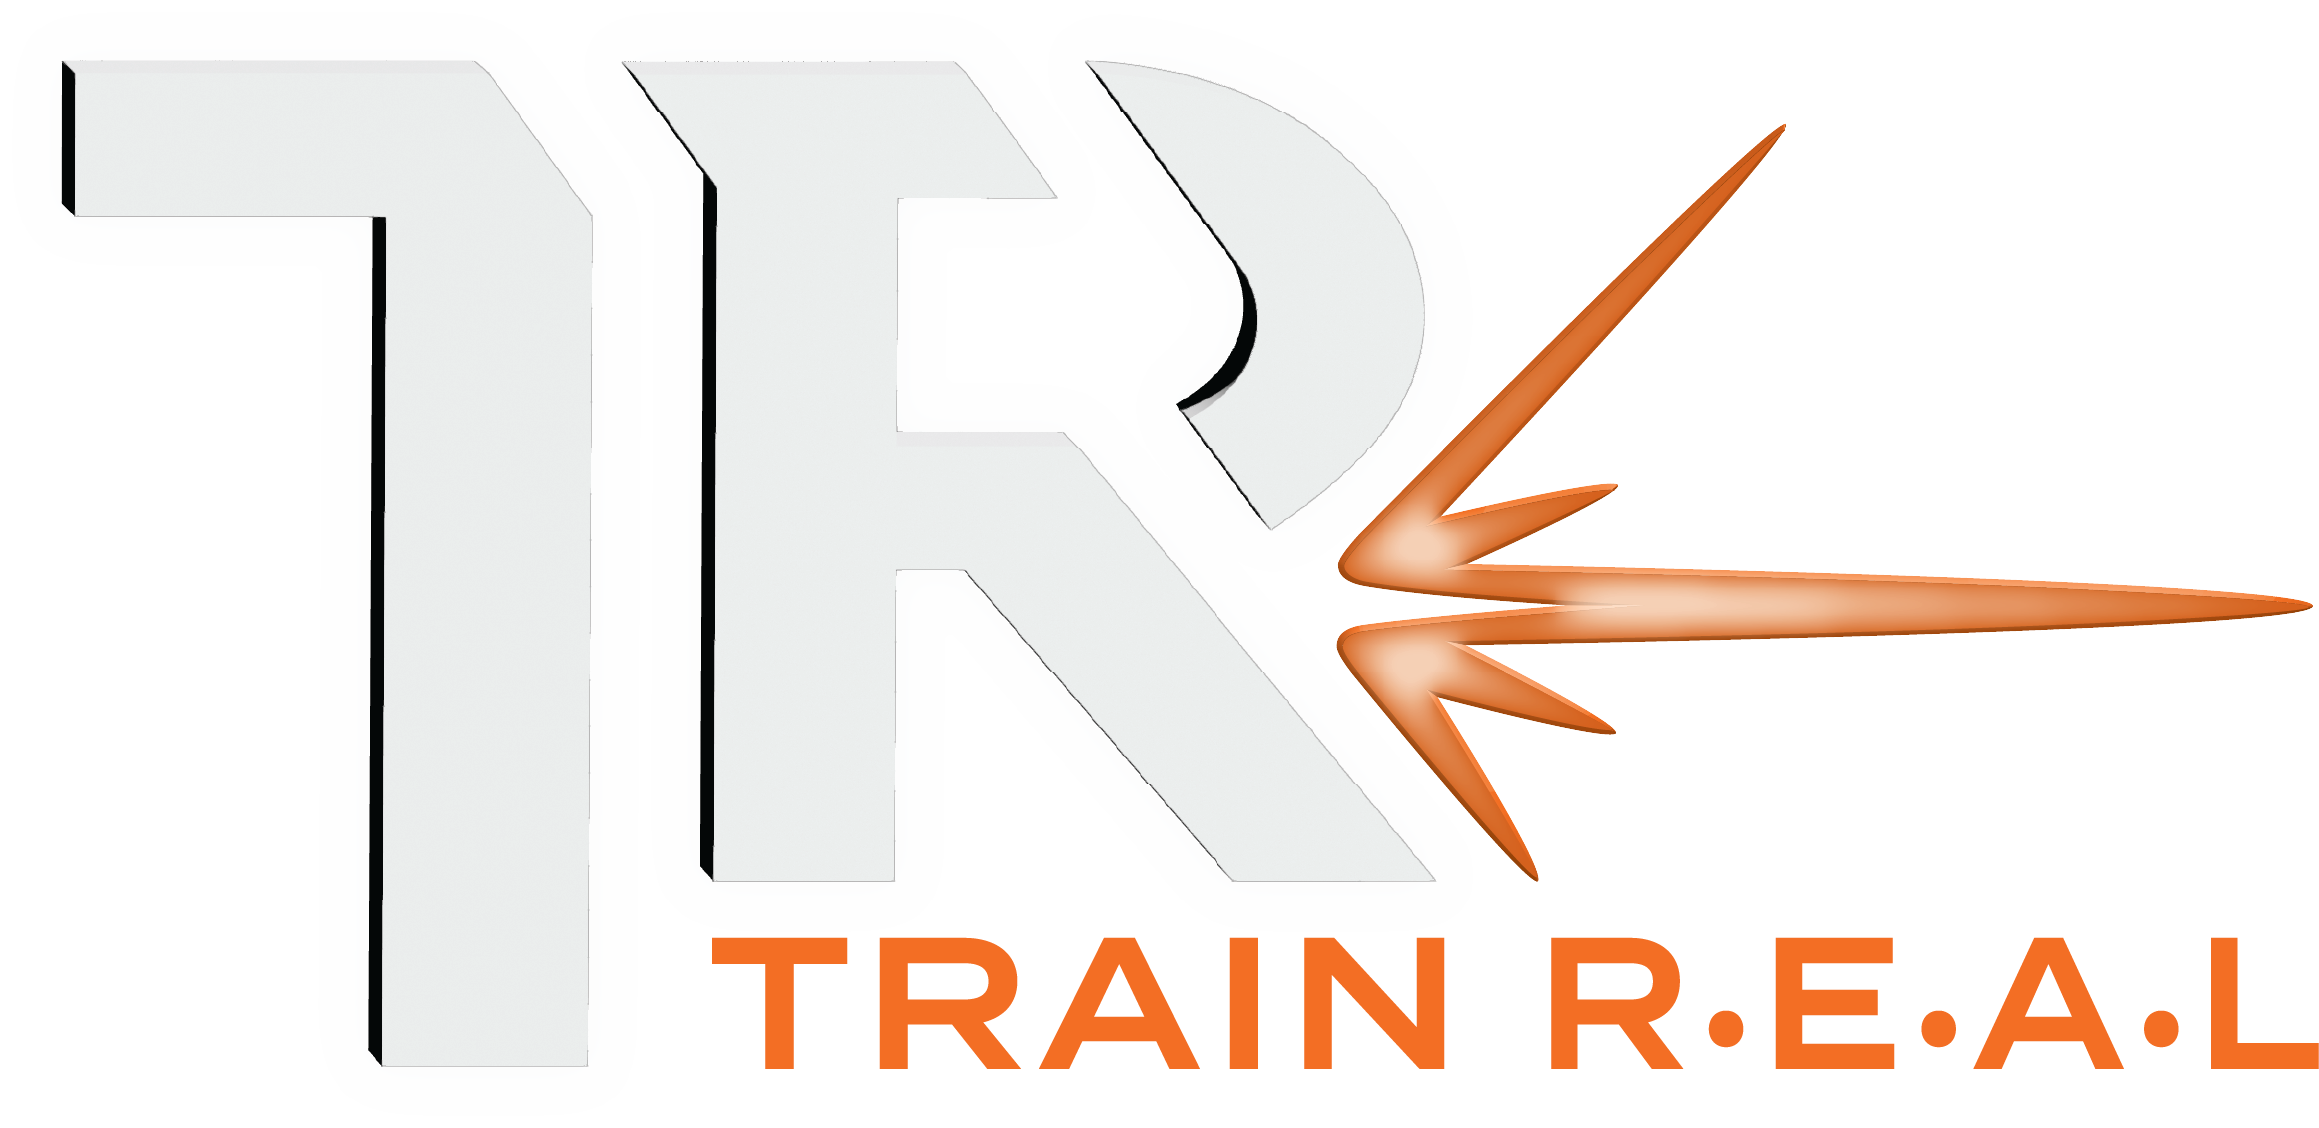 Train R.E.A.L